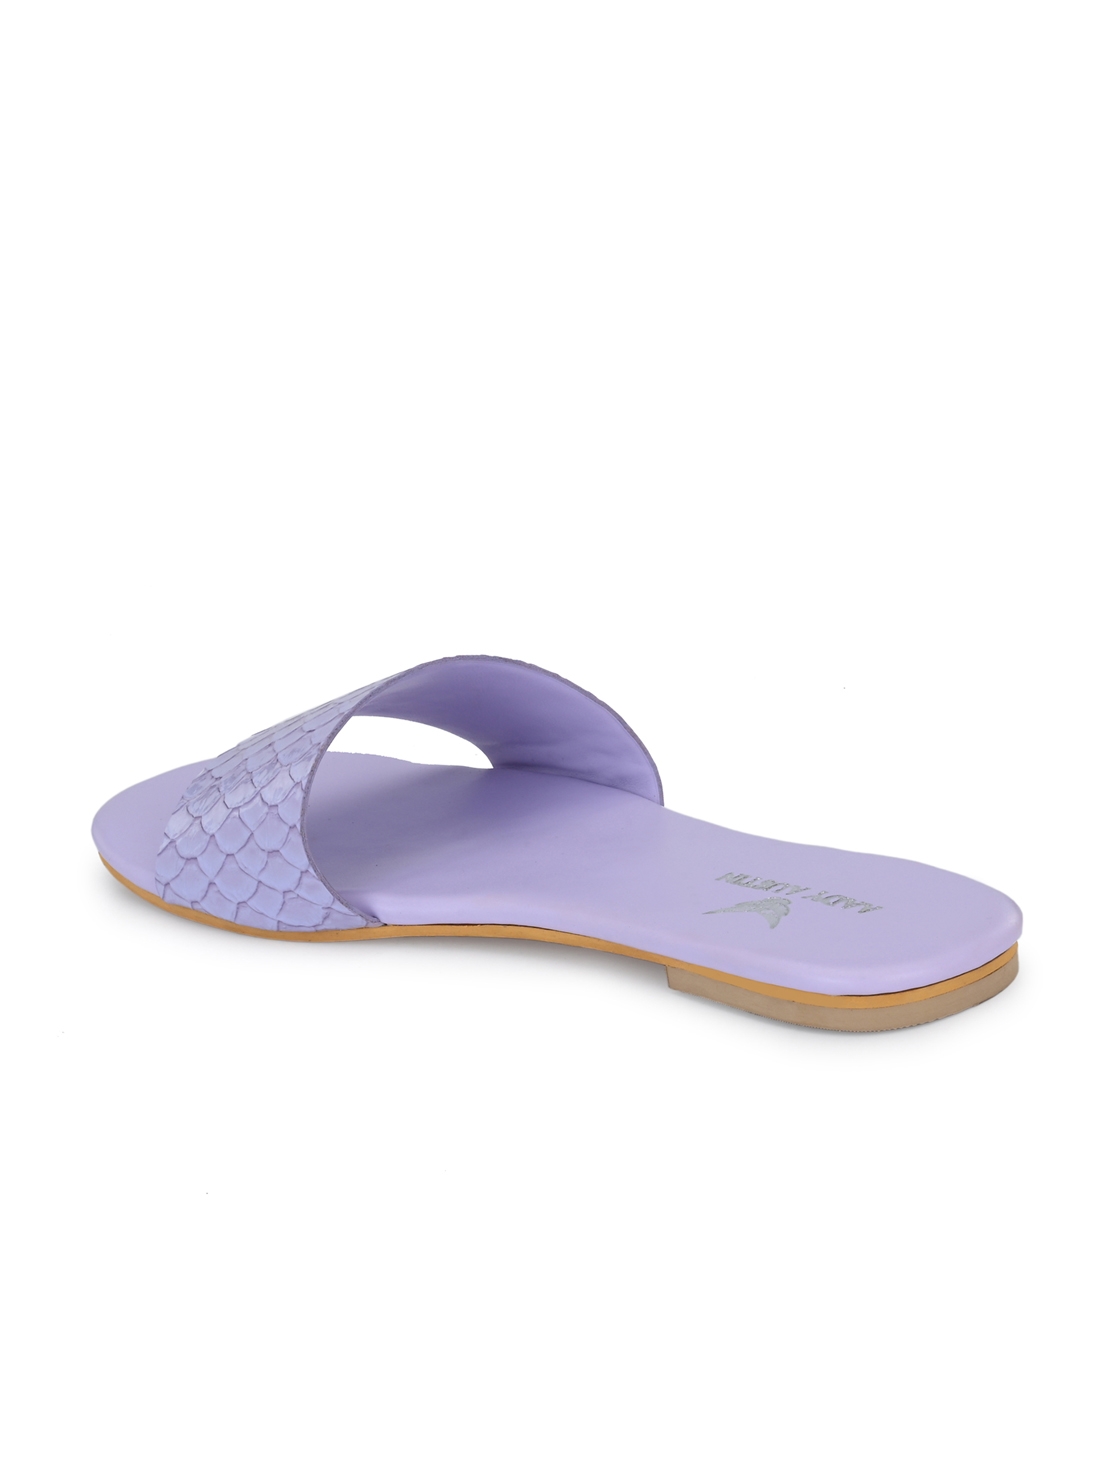 AADY AUSTIN | Aady Austin Lavender Open Toe Slider Flats for women 2